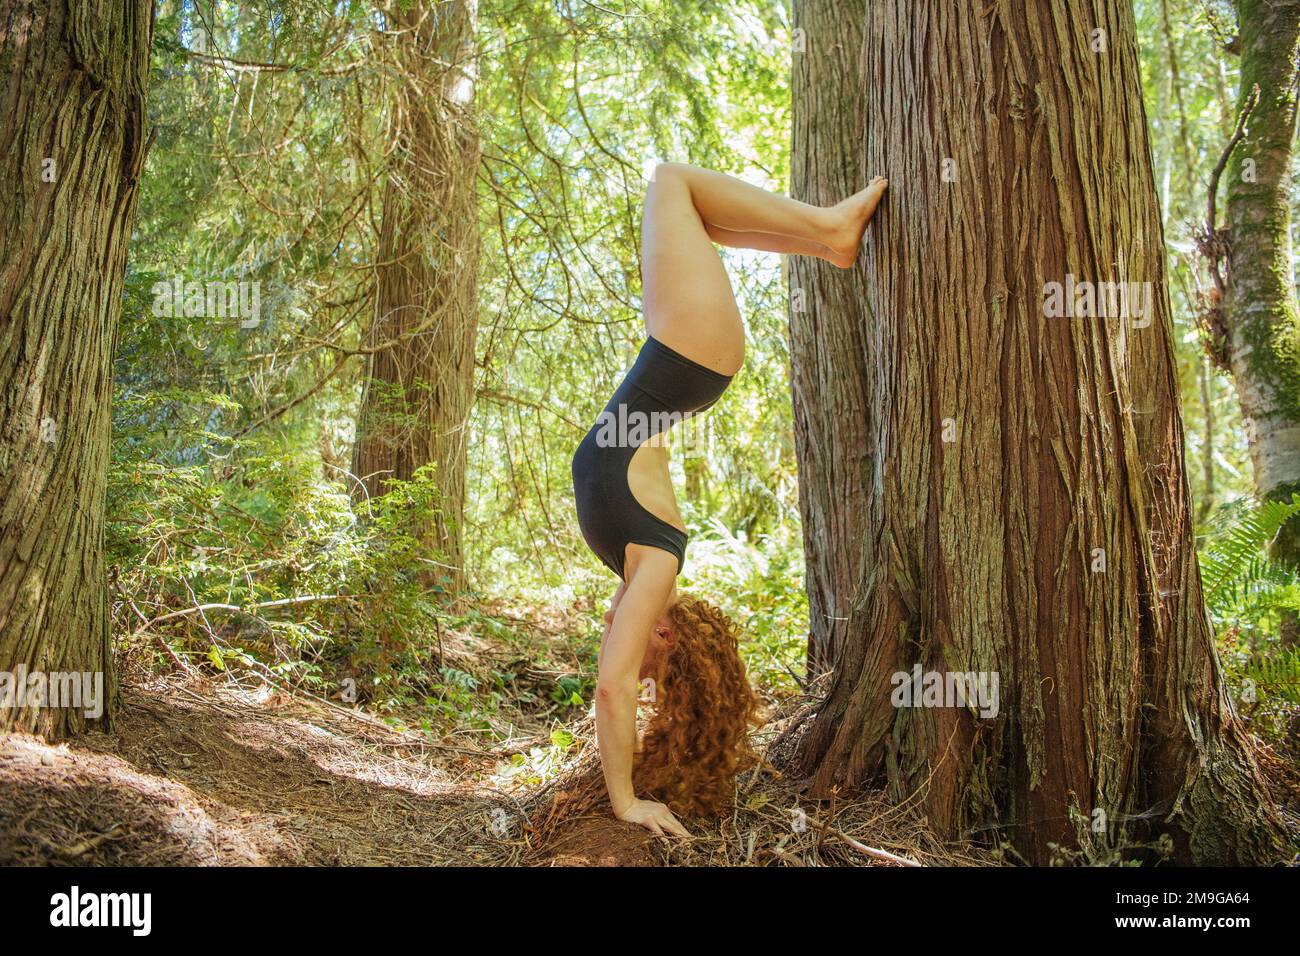 Frau, die beim Yoga im Wald, Bainbridge Island, Washington State, USA, am Handstand steht Stockfoto